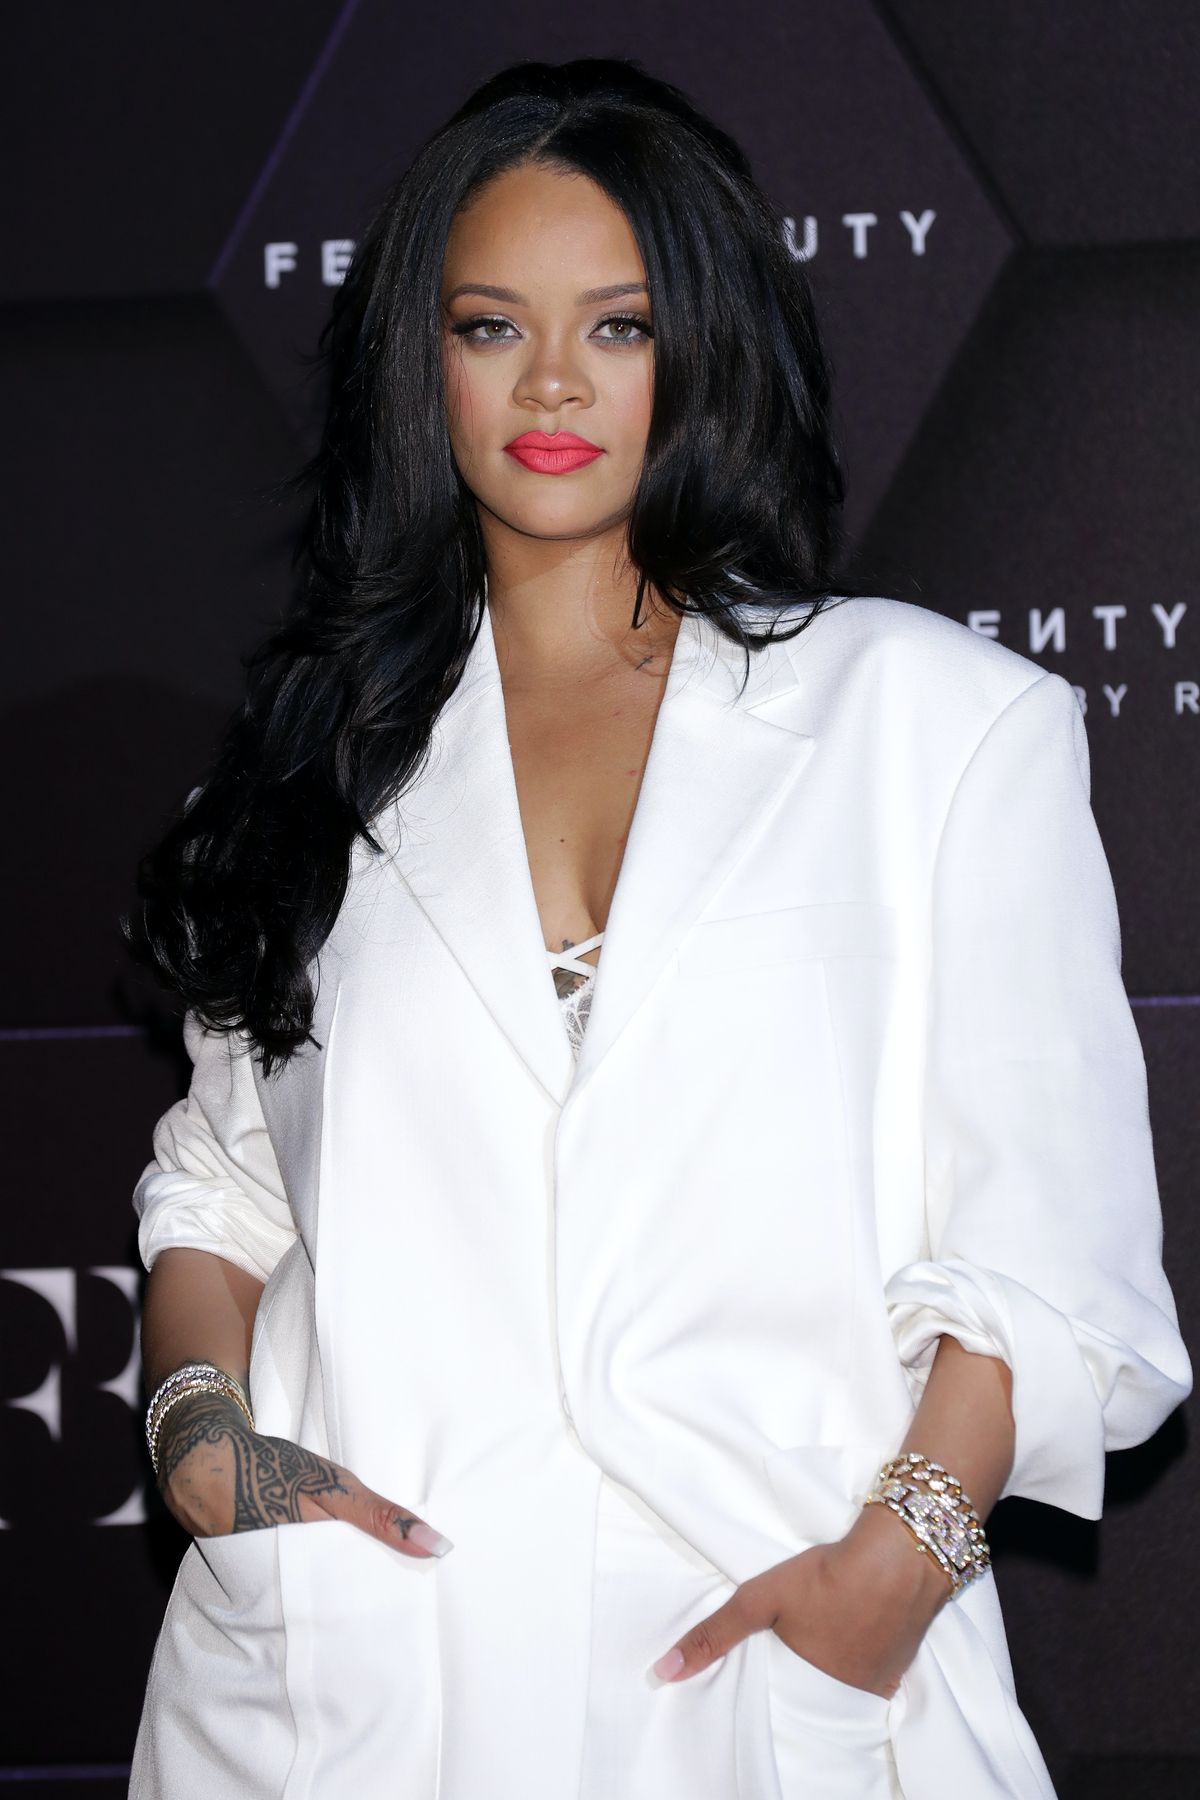 Tutto quello che sappiamo finora sulla linea di capelli Fenty segnalata da Rihanna